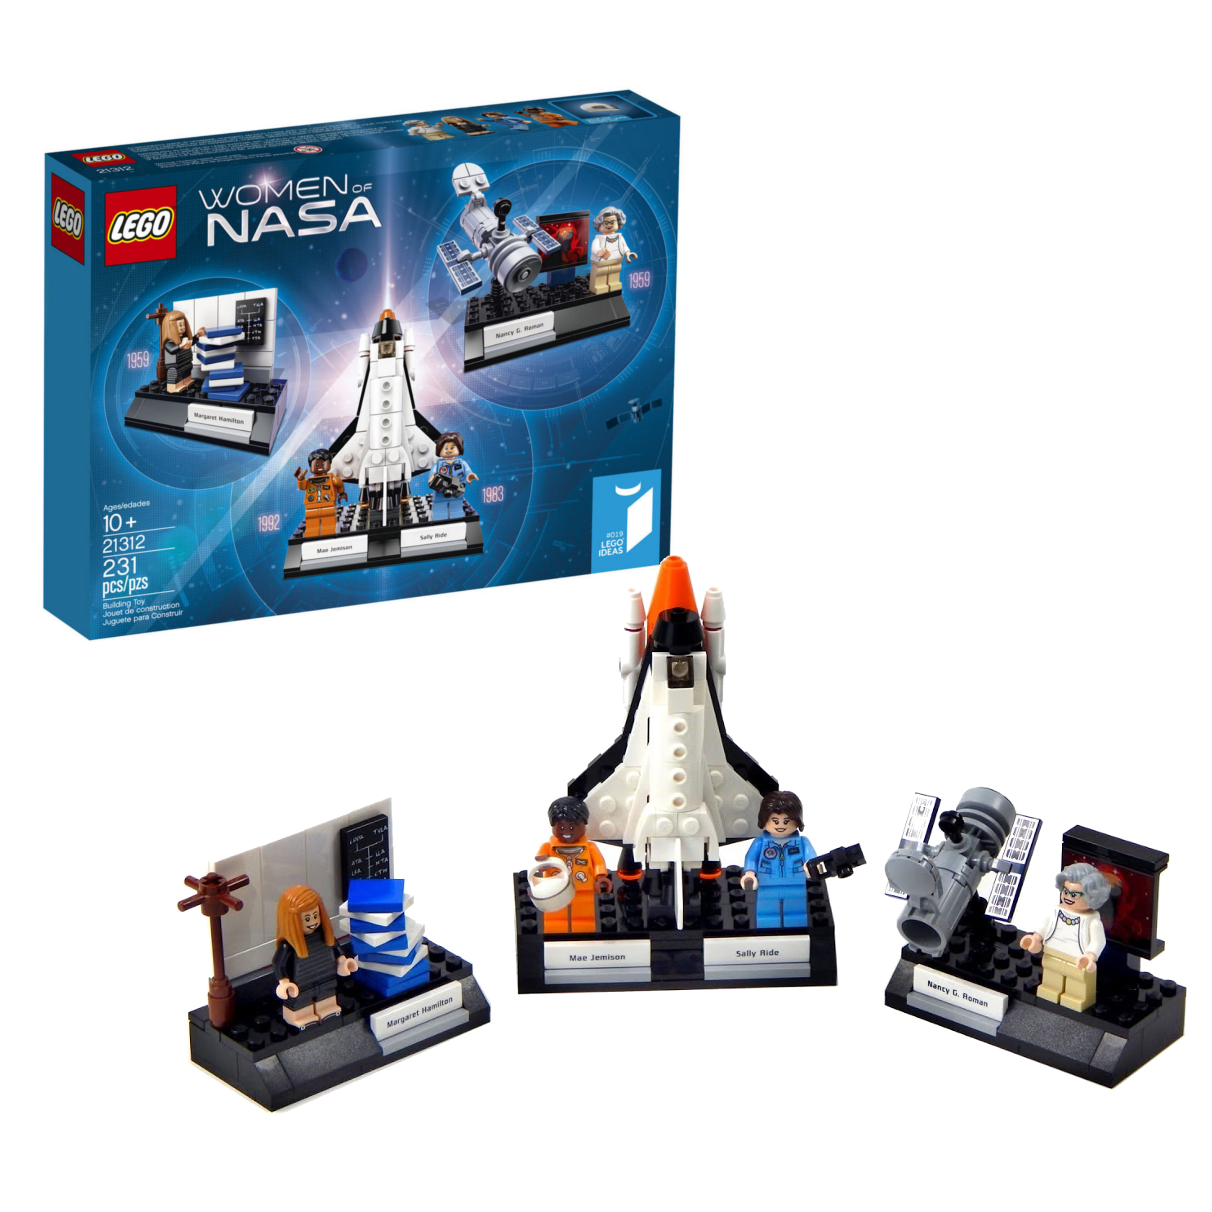 Lego Ideas 21312 Женщины НАСА